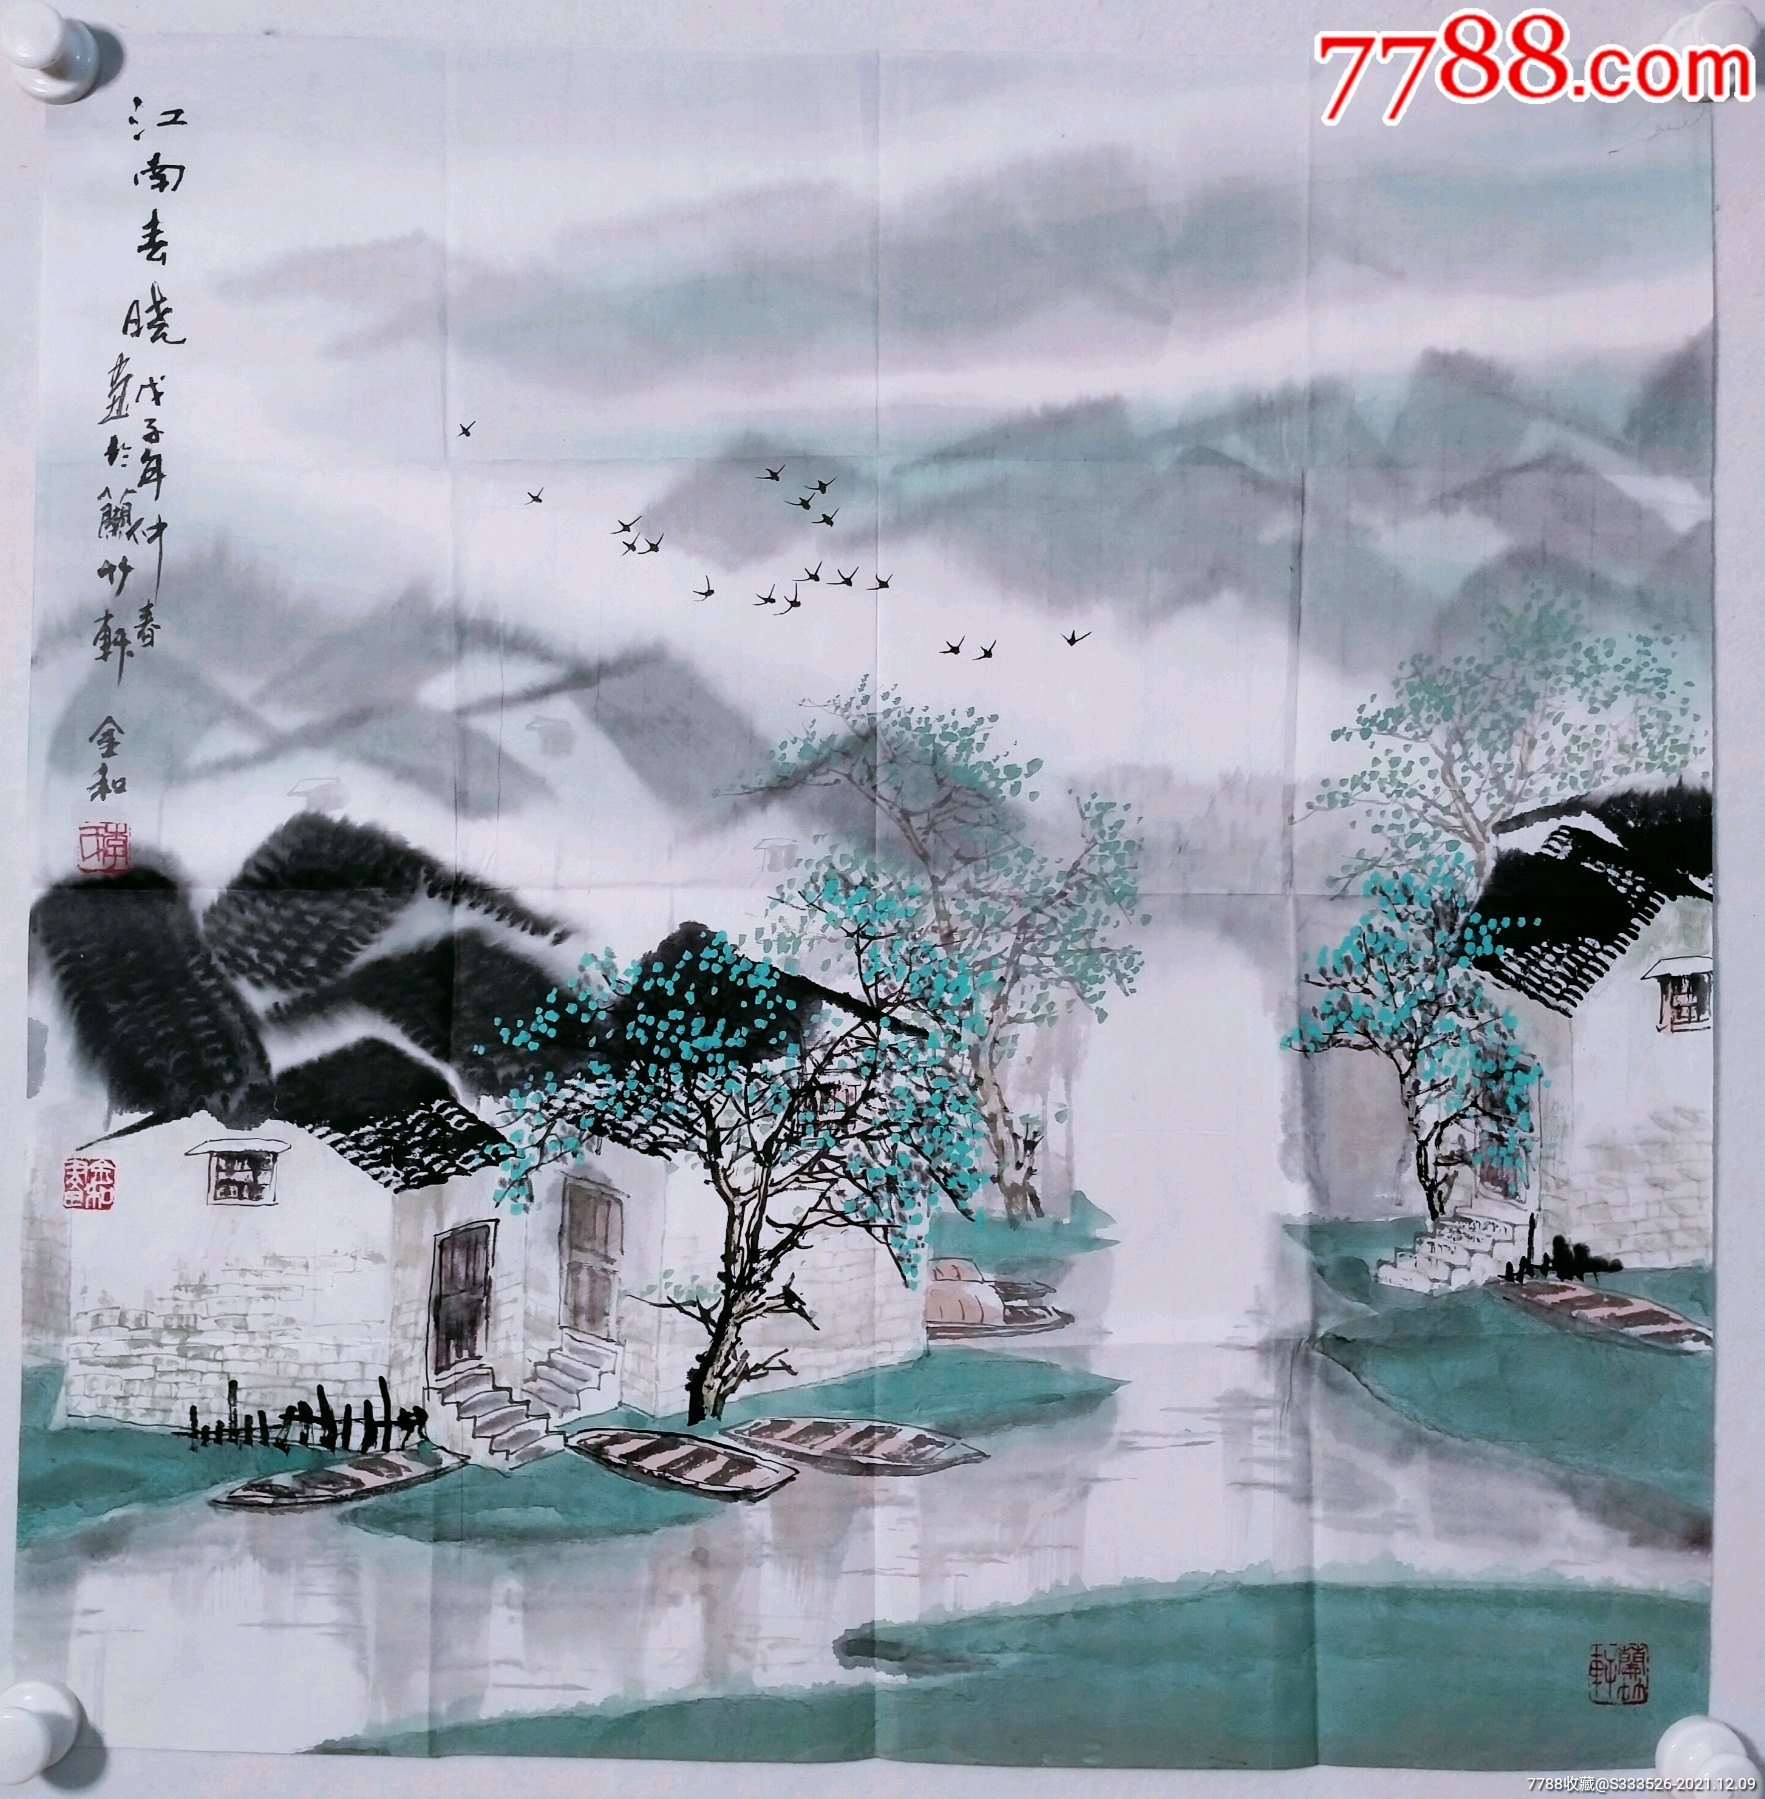 5品9997中国画坛百杰画家,李明伟四尺整纸山水画作一幅《漓江春色》